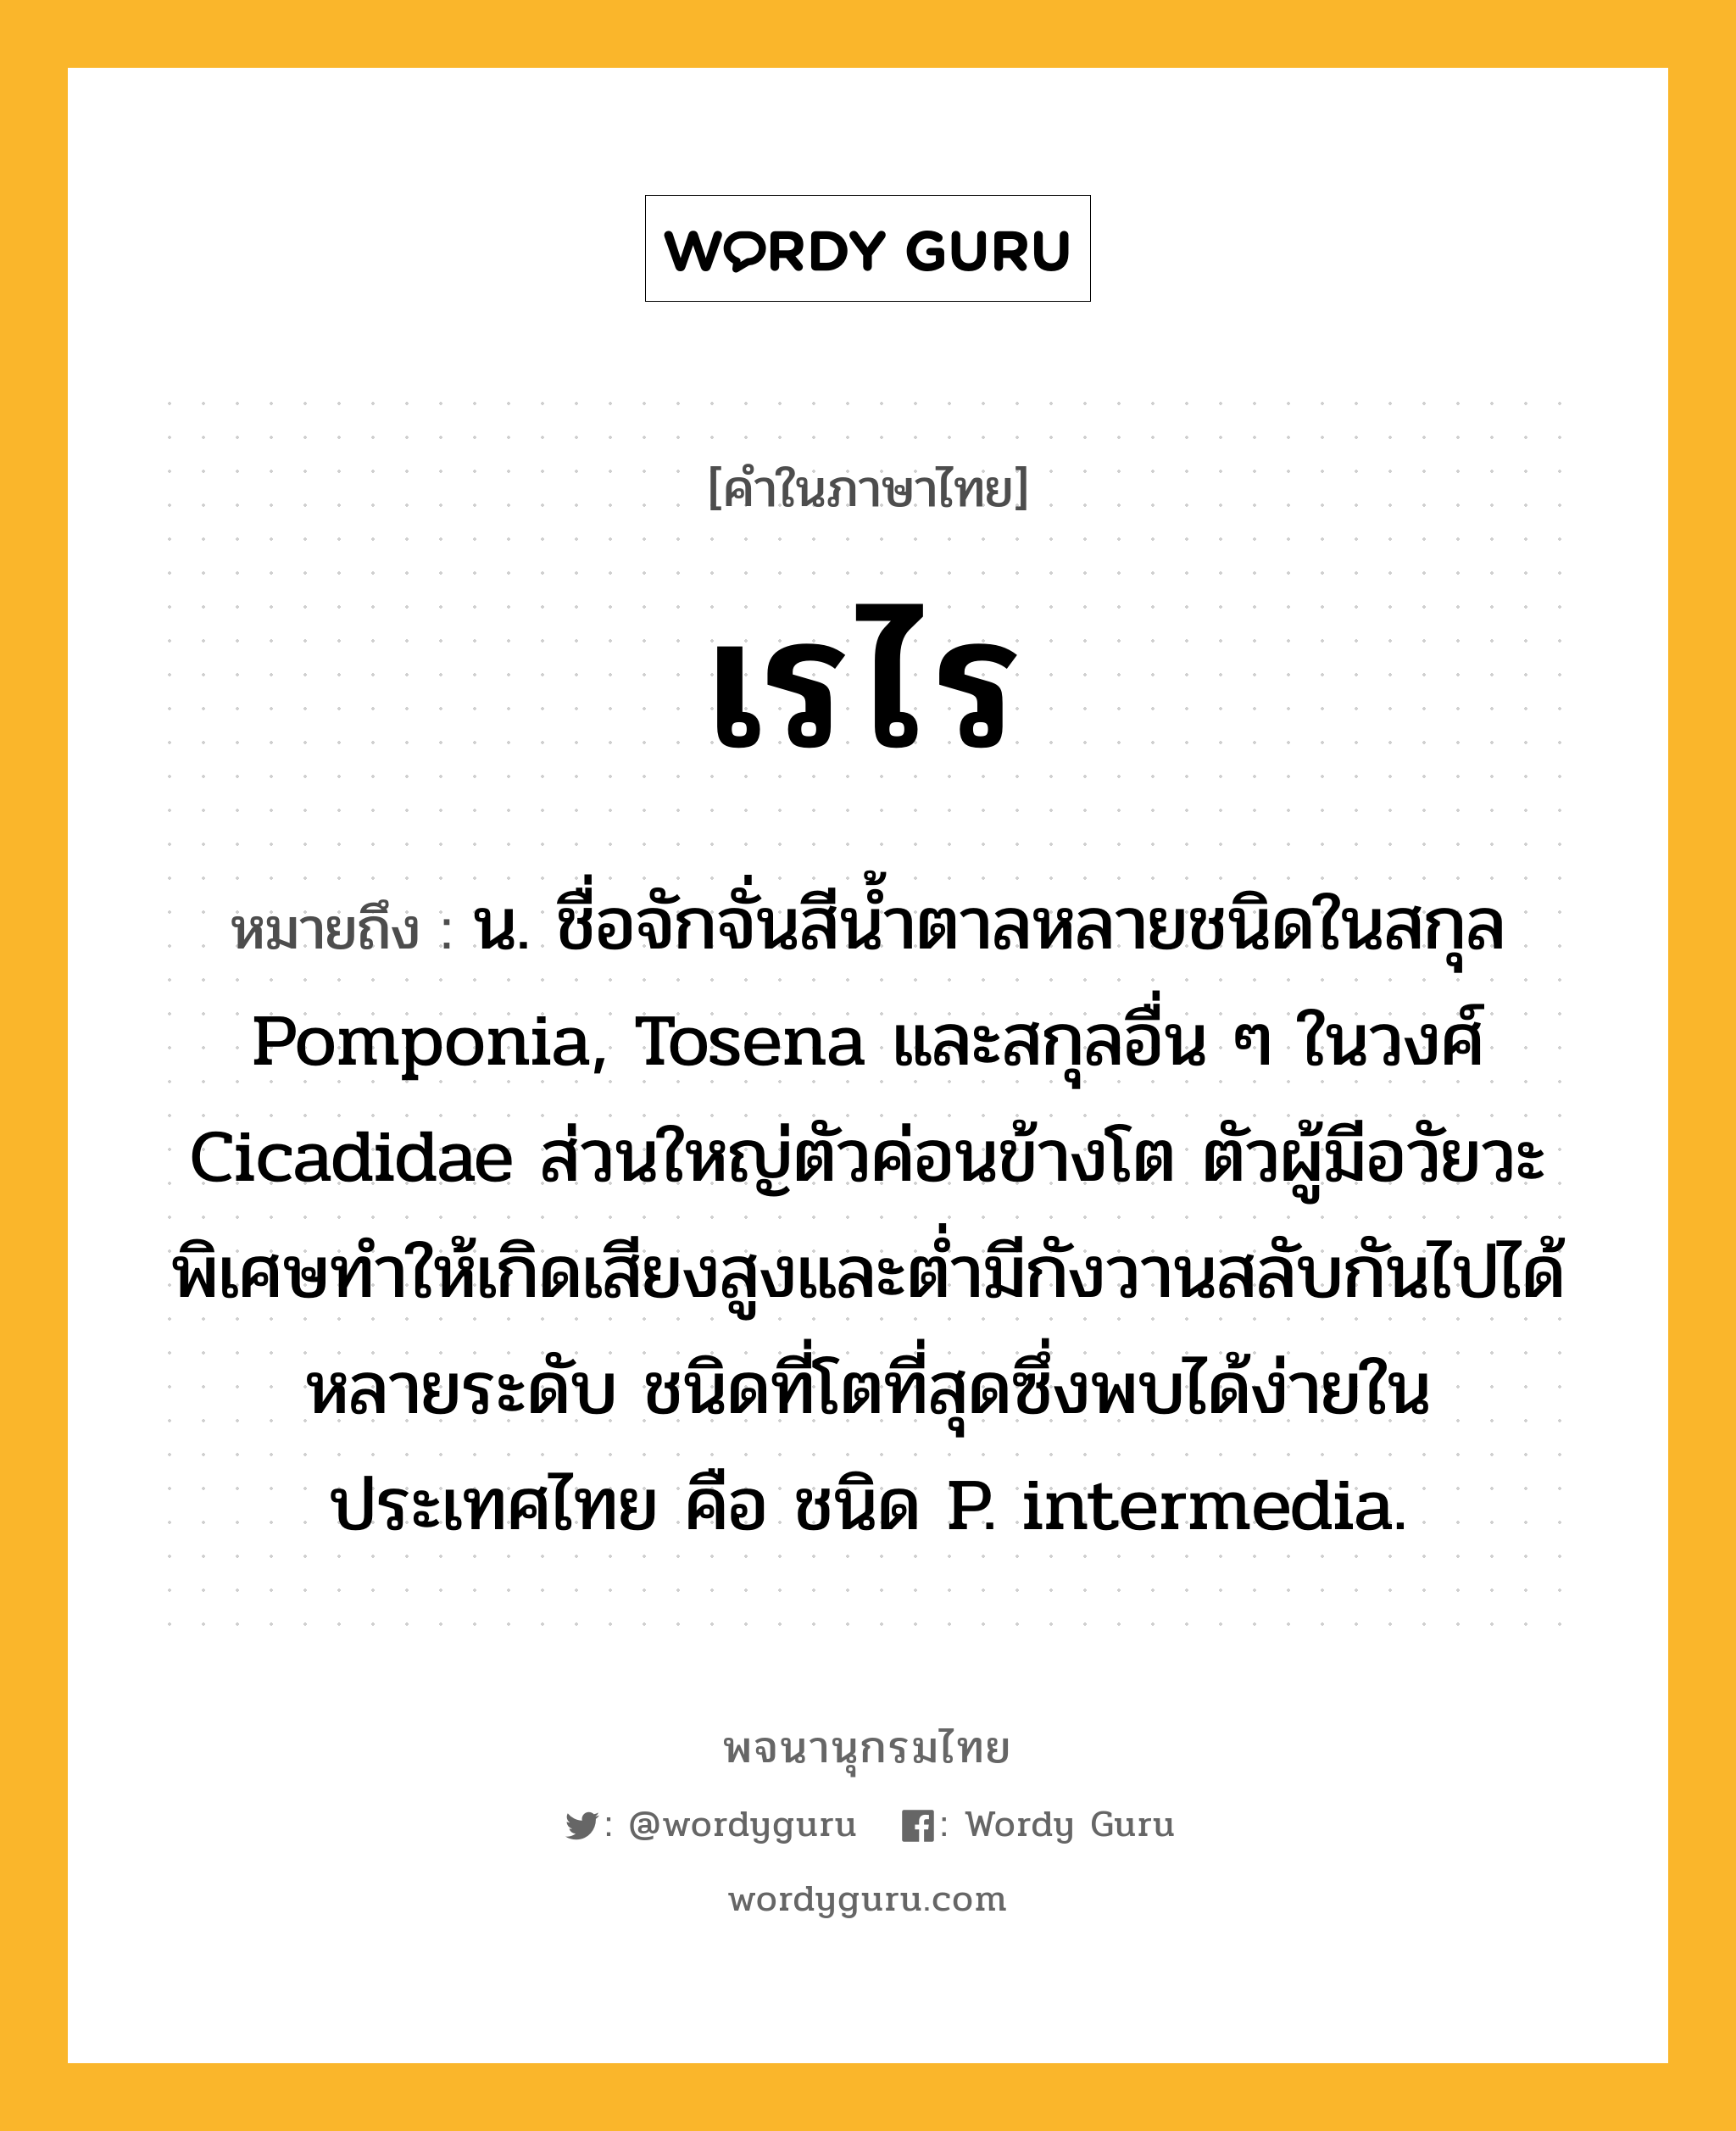 เรไร หมายถึงอะไร?, คำในภาษาไทย เรไร หมายถึง น. ชื่อจักจั่นสีนํ้าตาลหลายชนิดในสกุล Pomponia, Tosena และสกุลอื่น ๆ ในวงศ์ Cicadidae ส่วนใหญ่ตัวค่อนข้างโต ตัวผู้มีอวัยวะพิเศษทําให้เกิดเสียงสูงและตํ่ามีกังวานสลับกันไปได้หลายระดับ ชนิดที่โตที่สุดซึ่งพบได้ง่ายในประเทศไทย คือ ชนิด P. intermedia.